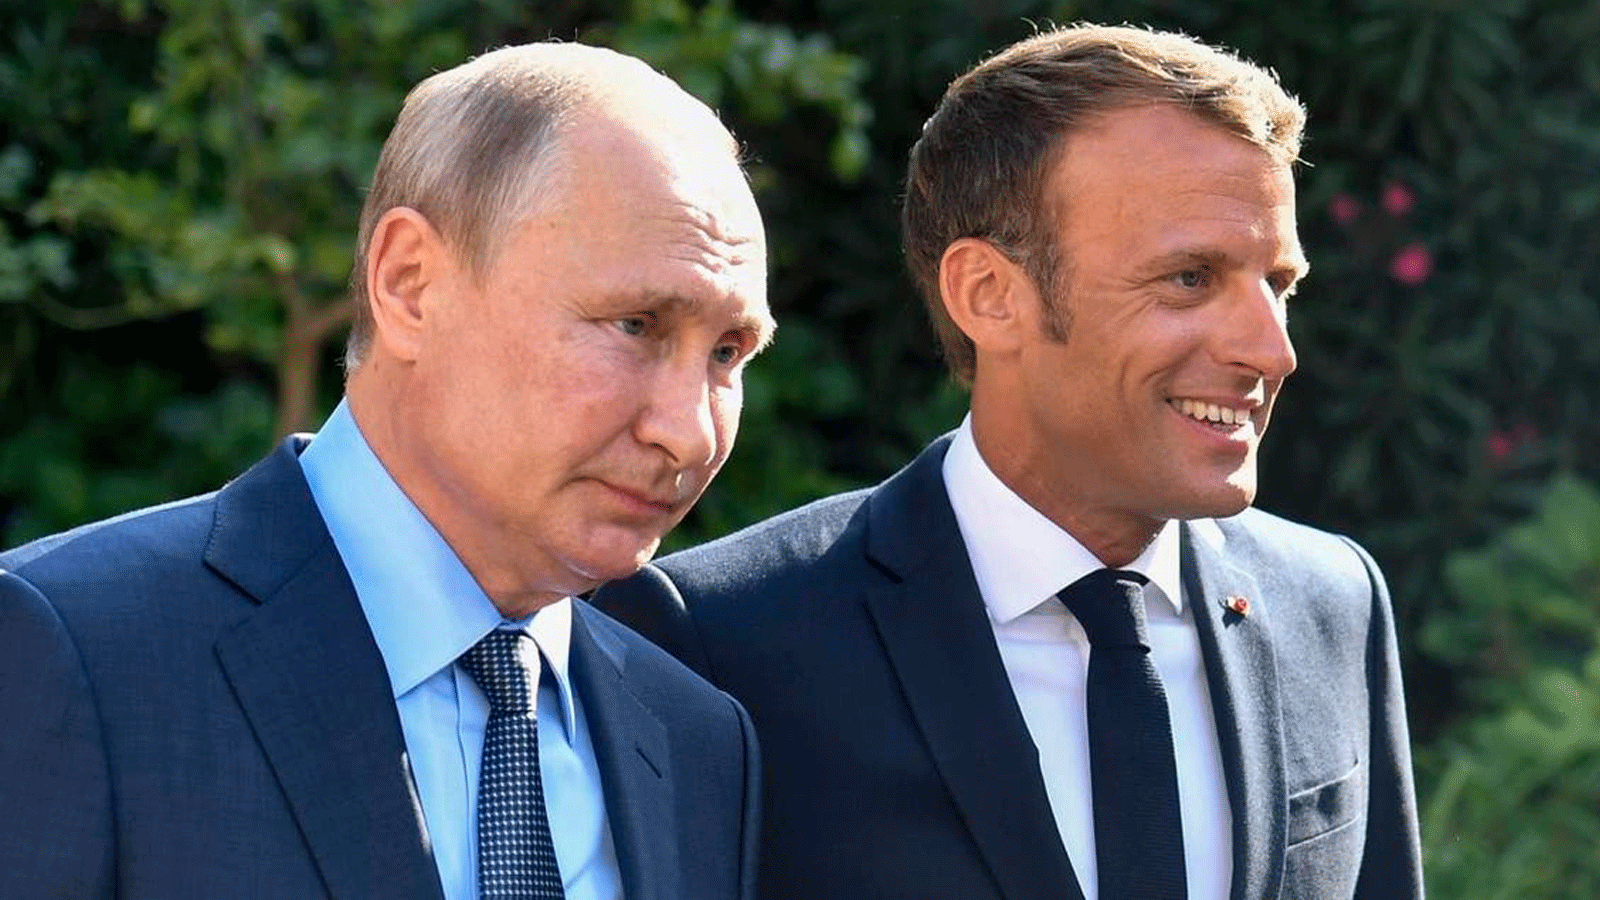 الرئيس الفرنسي ماكرون (يمين) يرحب بالرئيس الروسي بوتين في مقر إقامته الصيفي ، فورت دي بريغانكون على الريفييرا الفرنسية